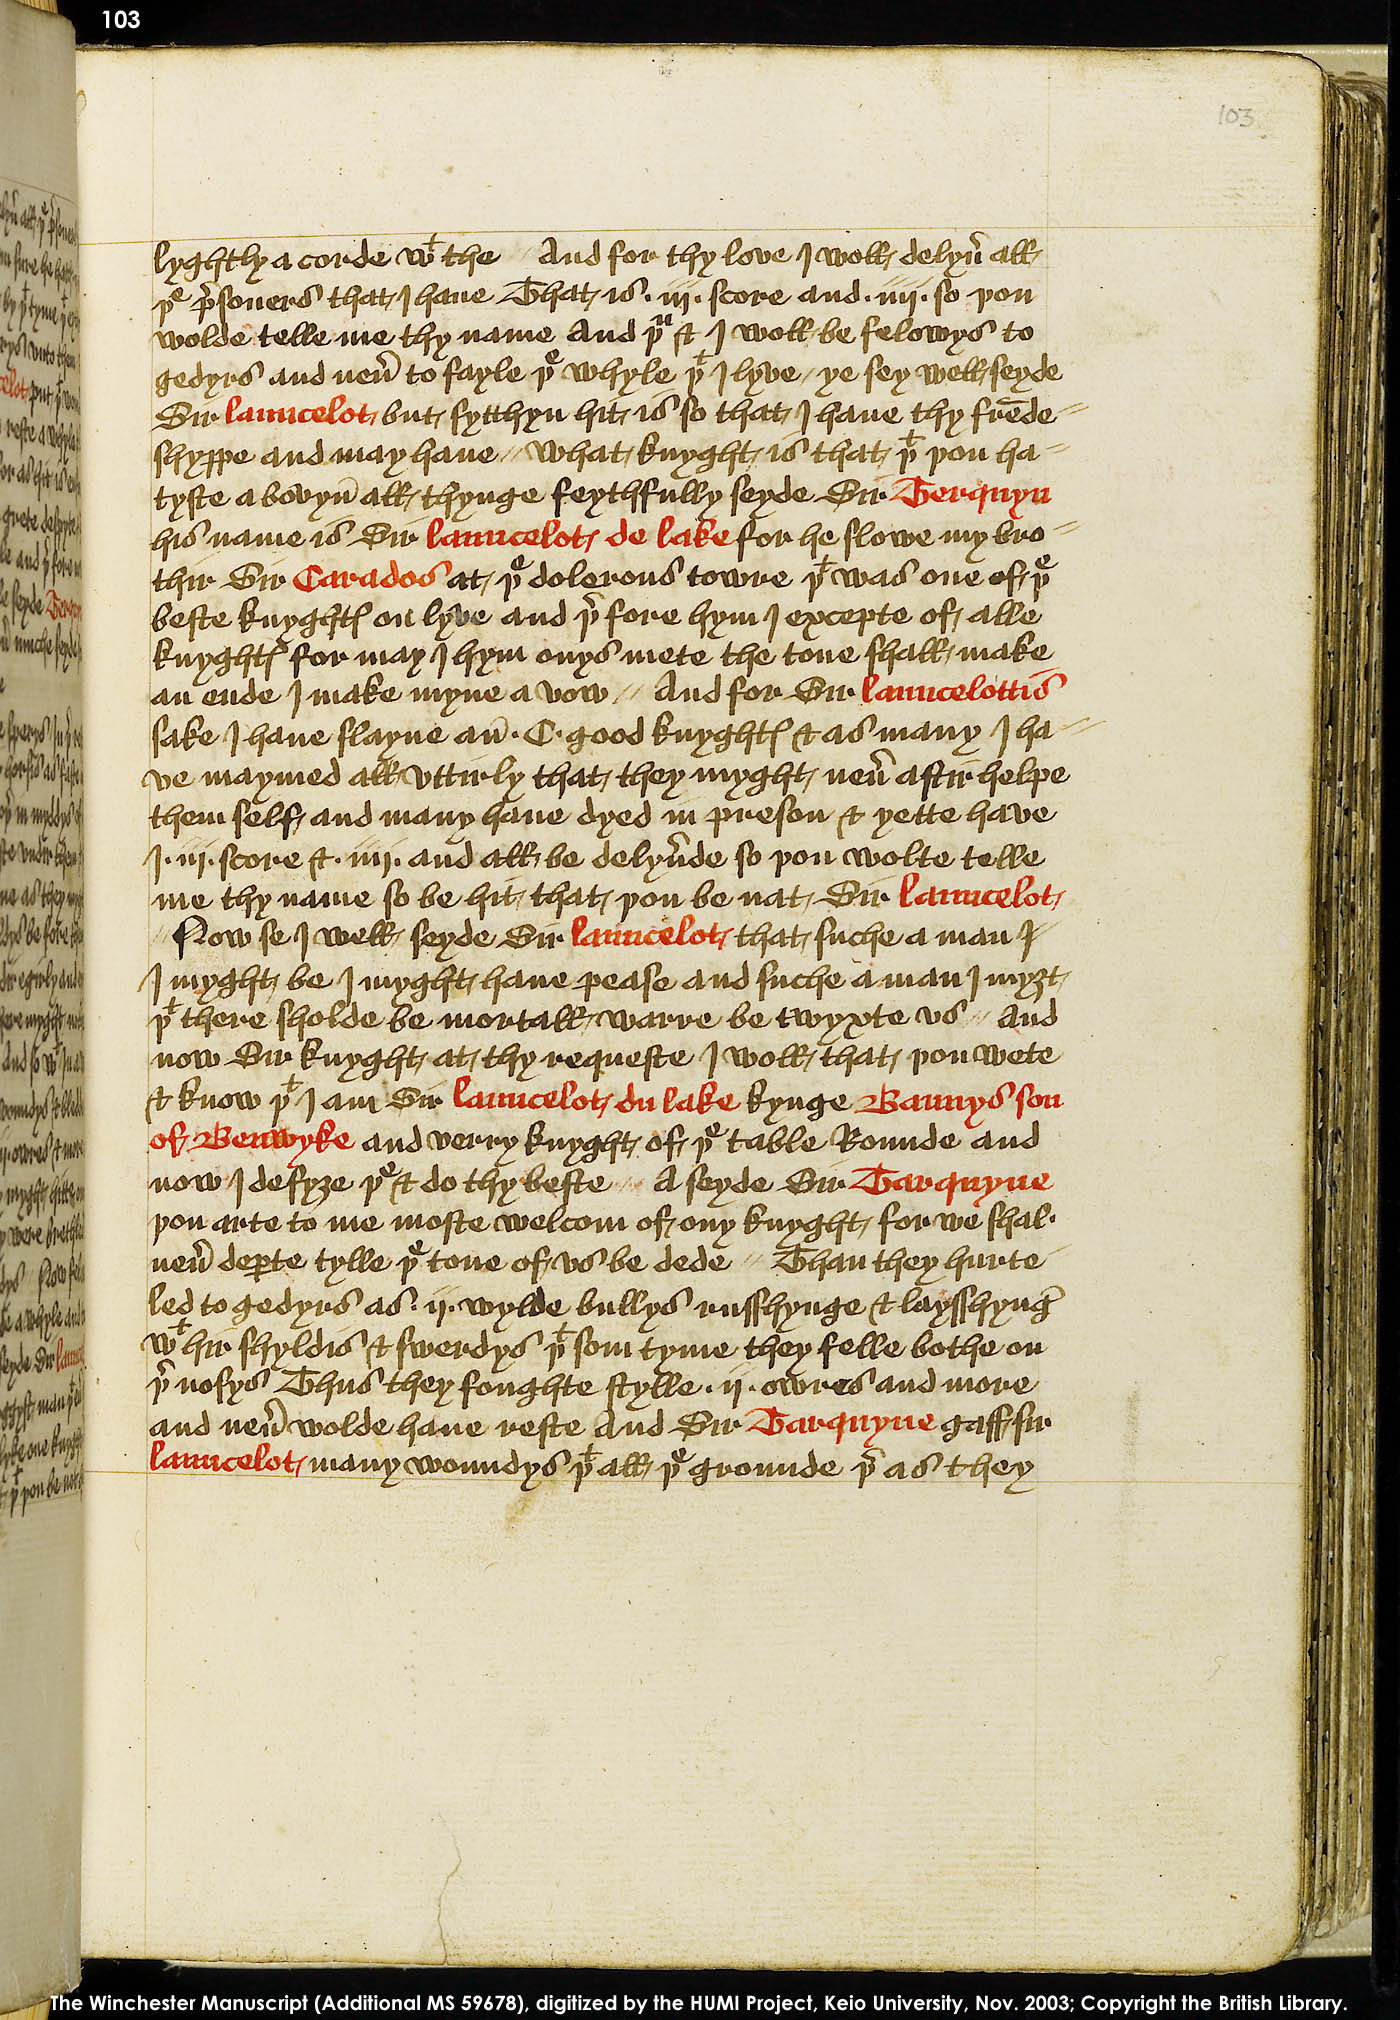 Folio 103r